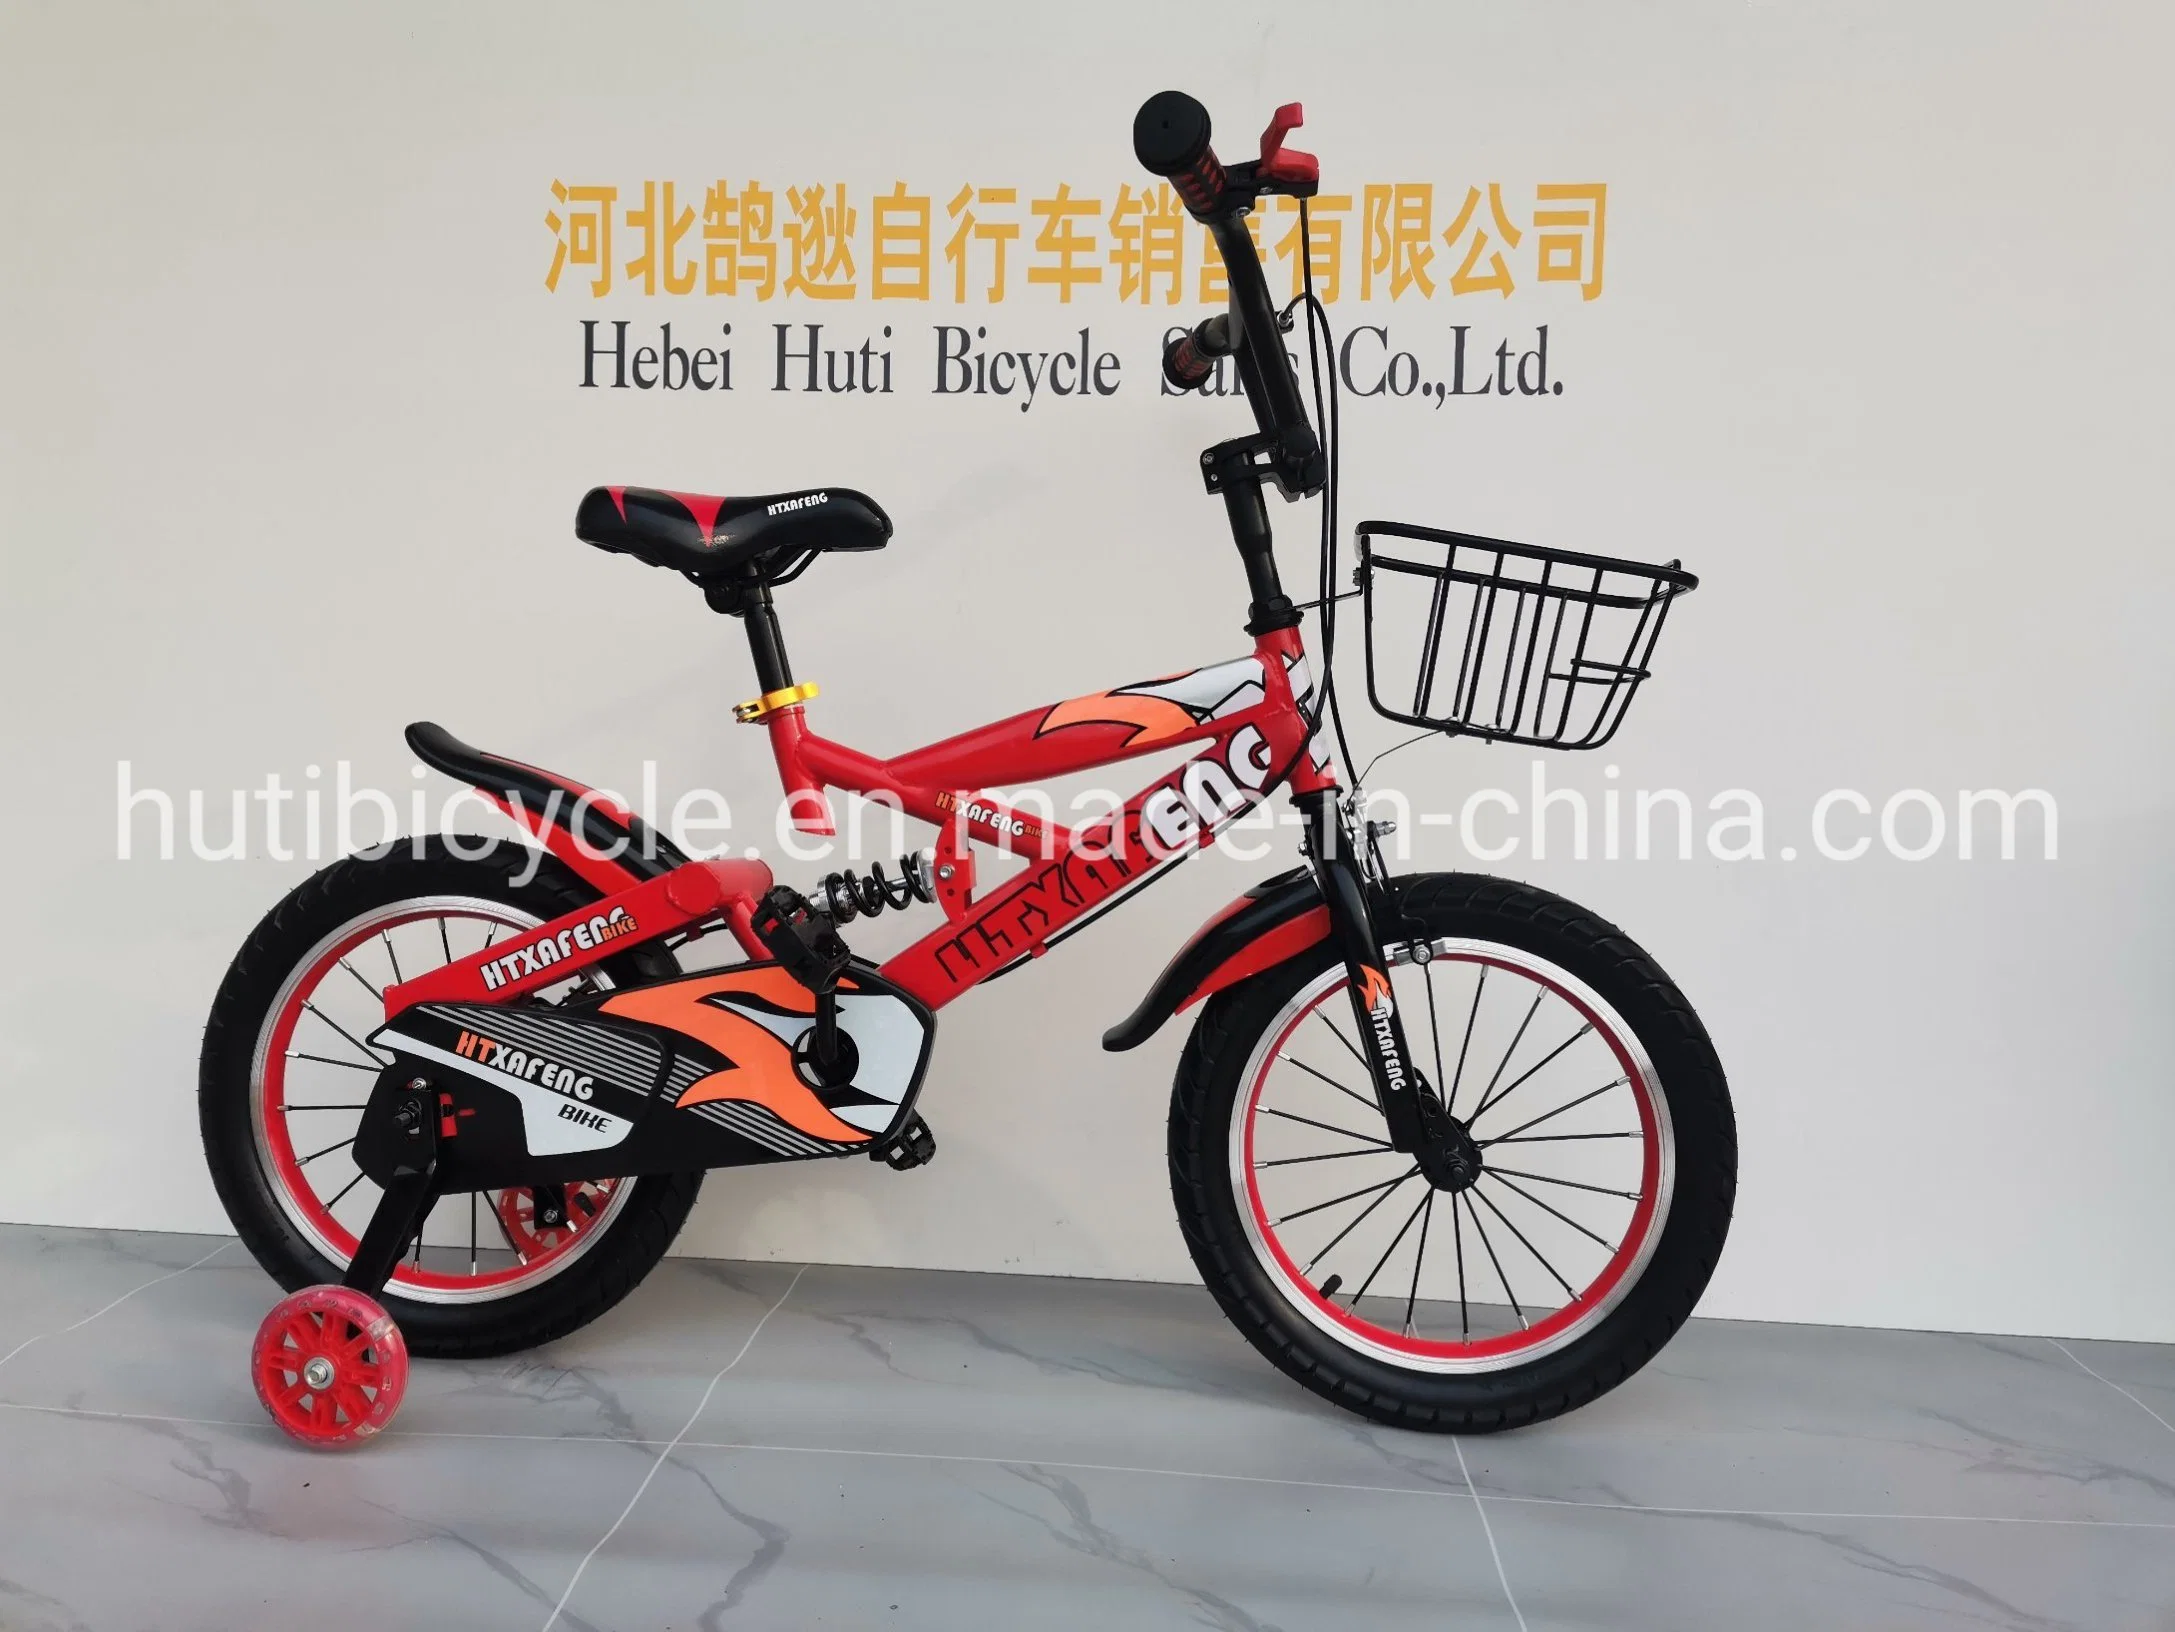 أوكازيون مباشر للمصنع 16 18 20 بوصة دراجة للأطفال شهادة CE دراجة طريق Bicicicleta ألوان متعددة خيارات دراجة الأطفال مع عجلات التدريب ومكبح اليد